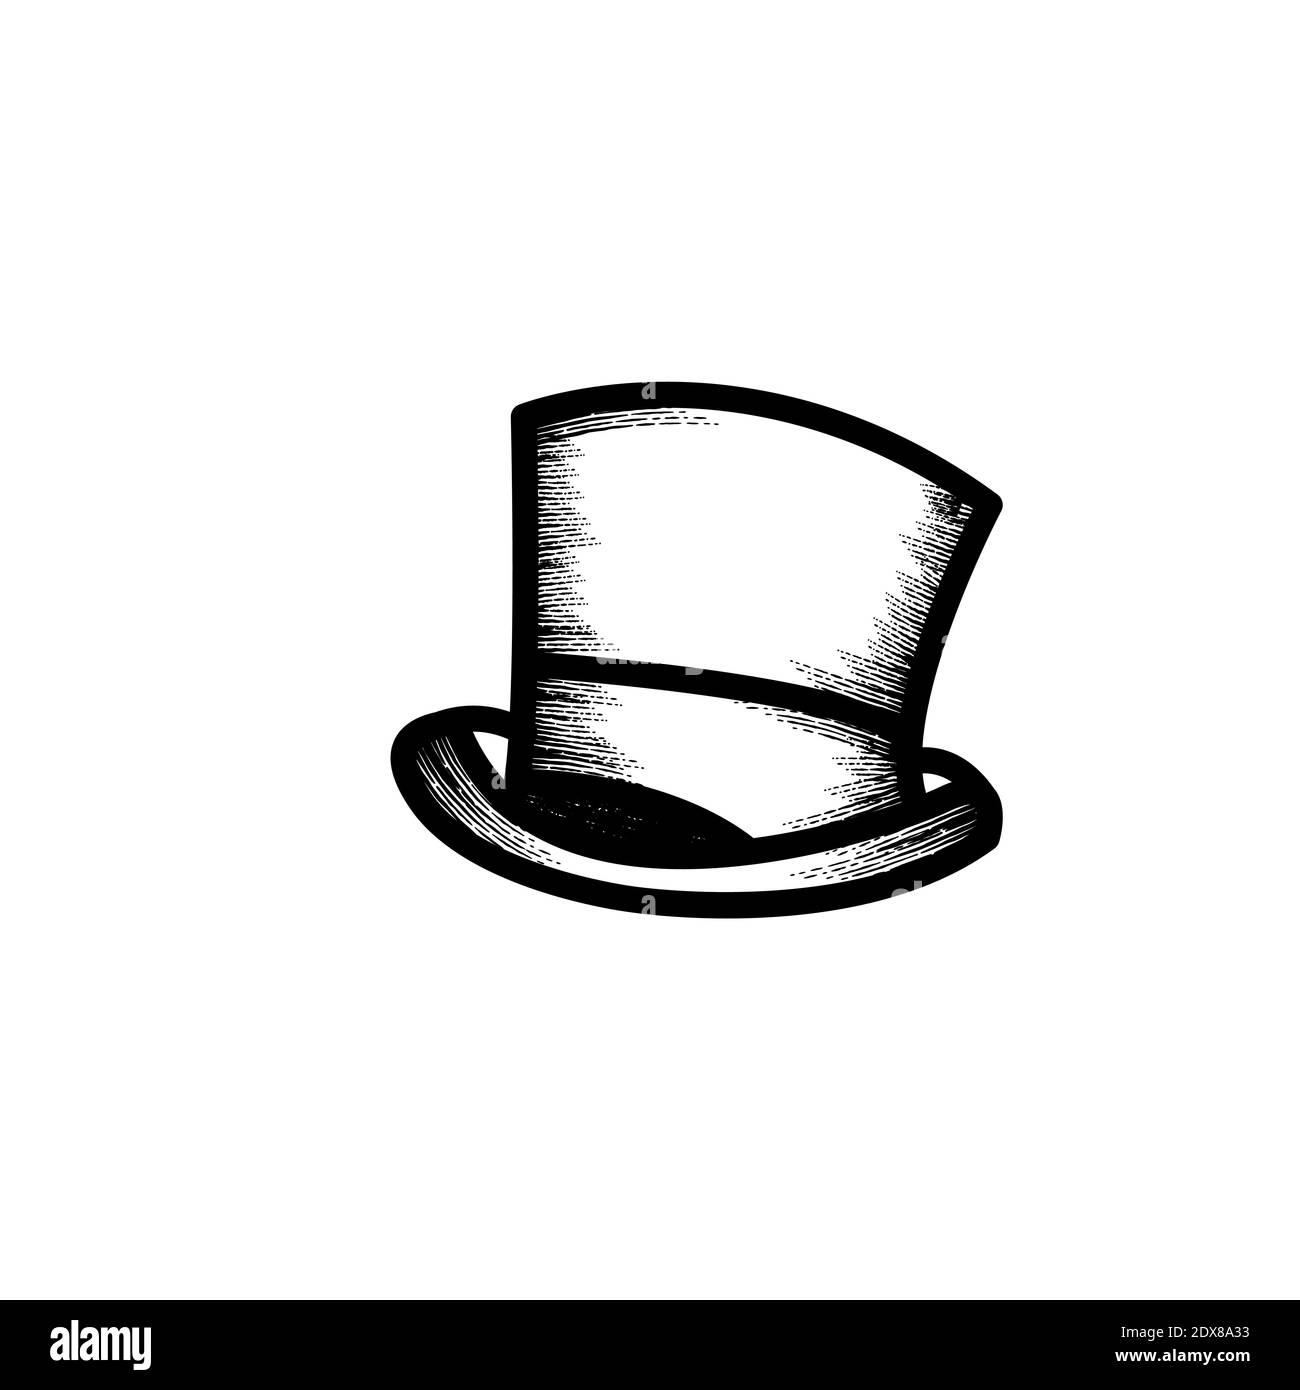 Zauberer Hut Hand gezeichnet Symbol Vektor Illustration Stock-Vektorgrafik  - Alamy